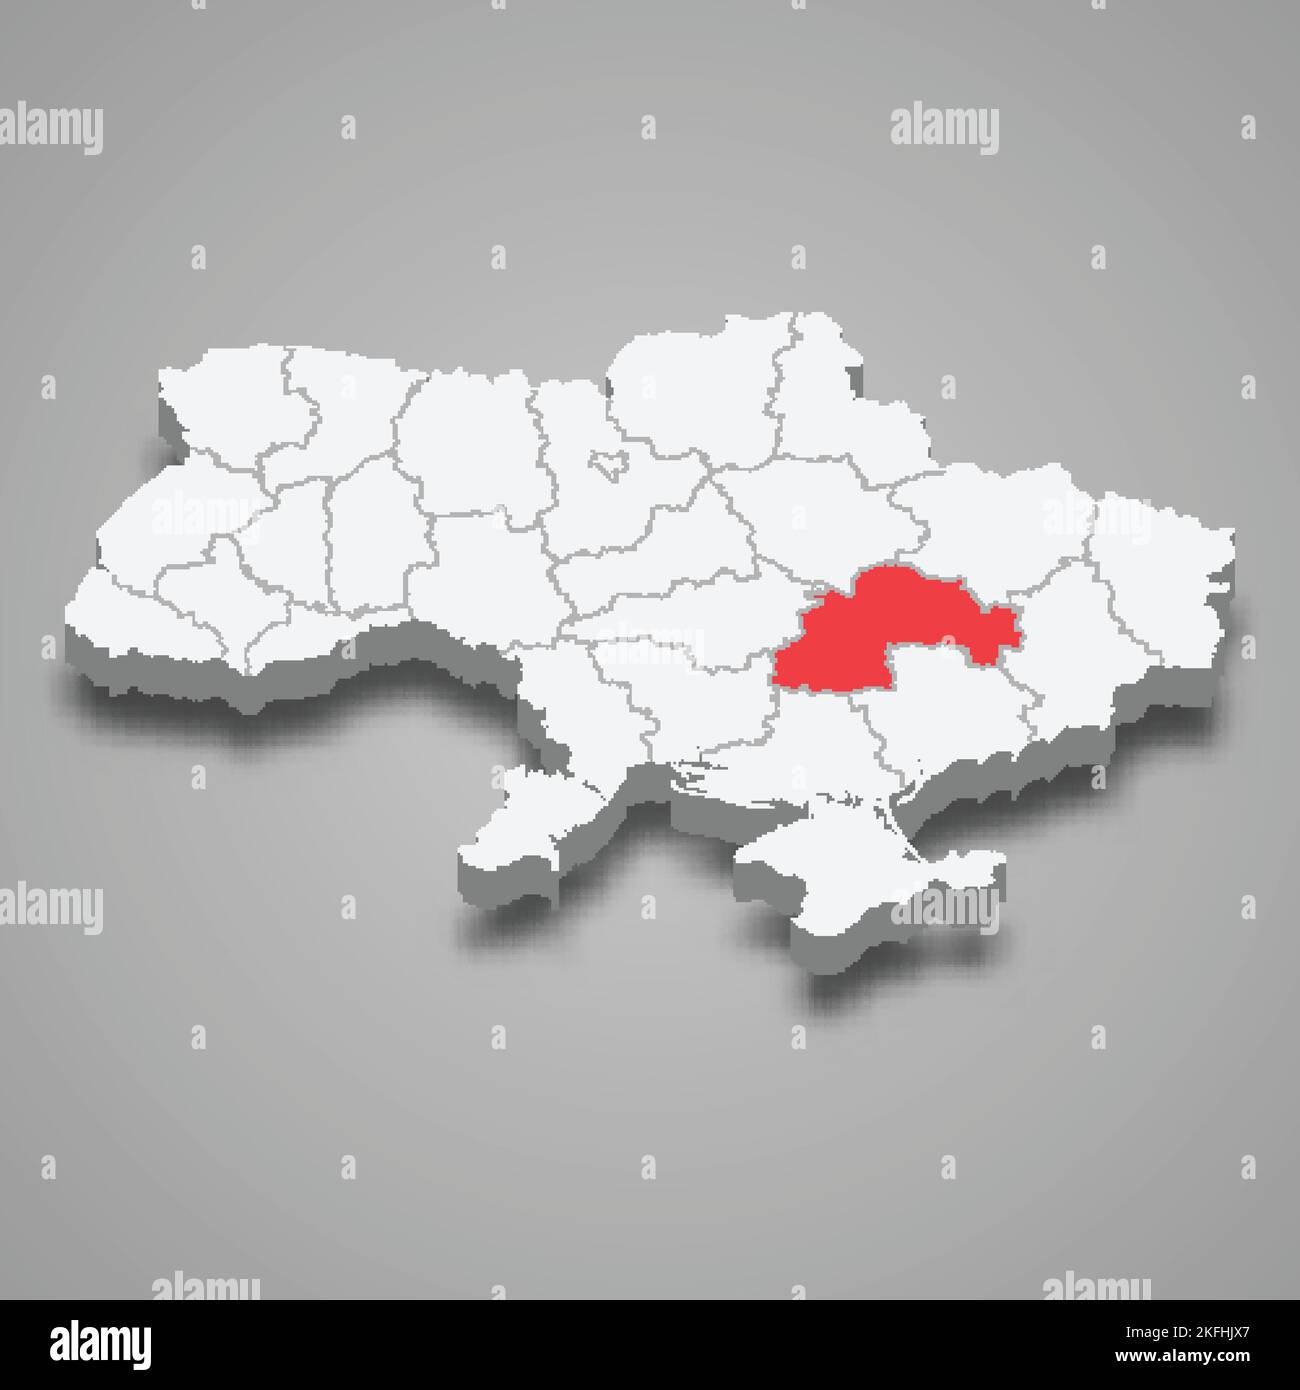 Dnipropetrovsk Oblast. Posizione della regione all'interno dell'Ucraina mappa isometrica 3D Illustrazione Vettoriale